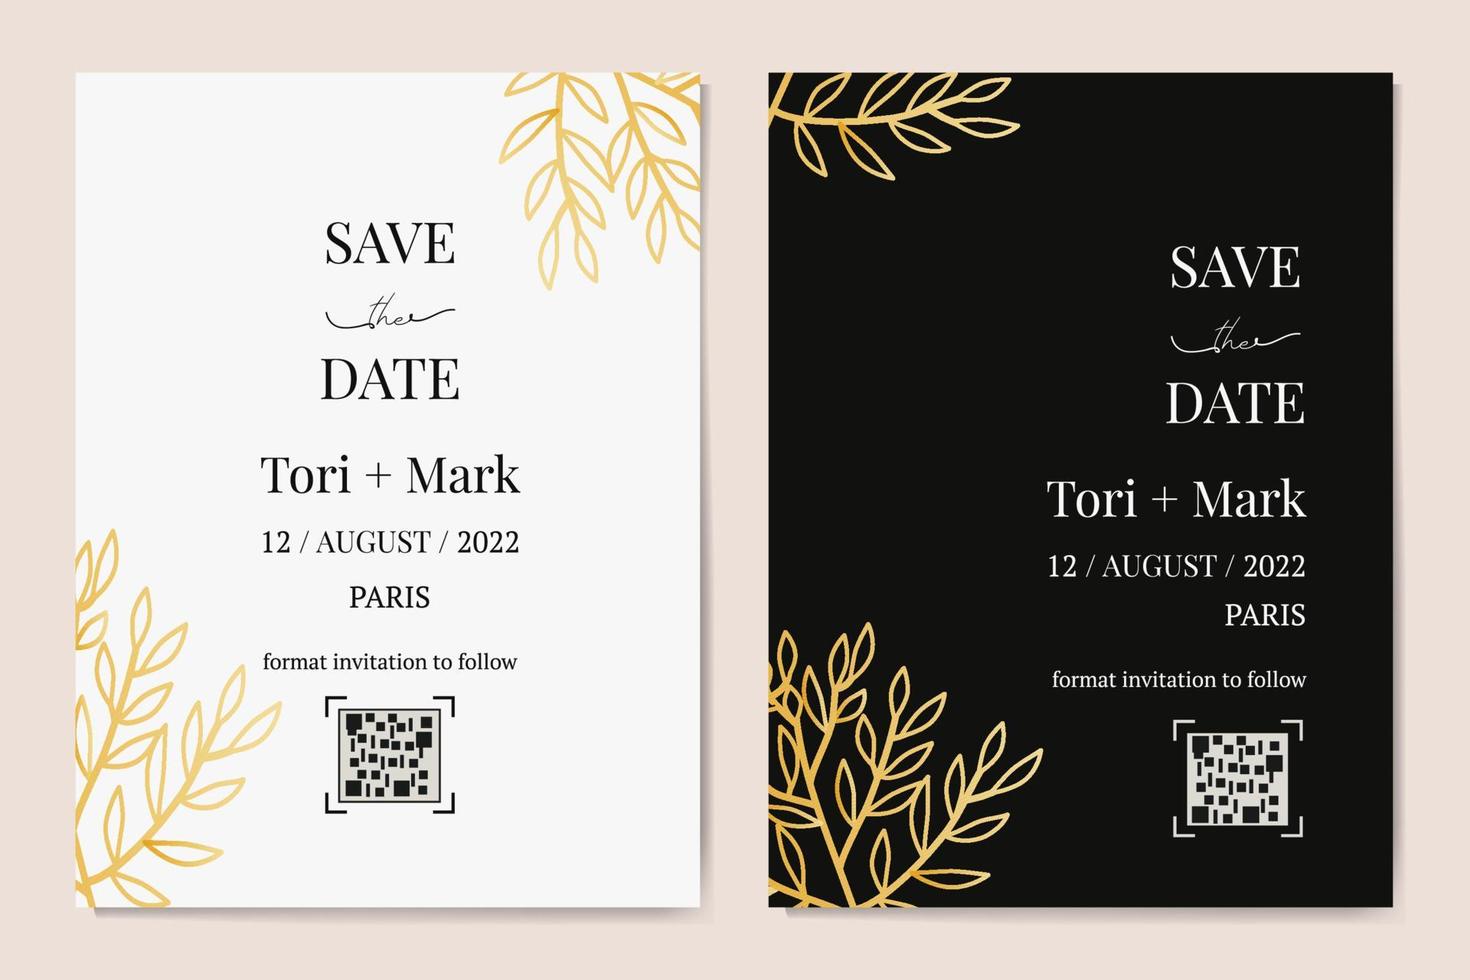 biglietti d'invito a nozze verticali vettoriali con foglie nere e dorate su sfondo bianco e scuro. design botanico esotico di lusso per la cerimonia di nozze.